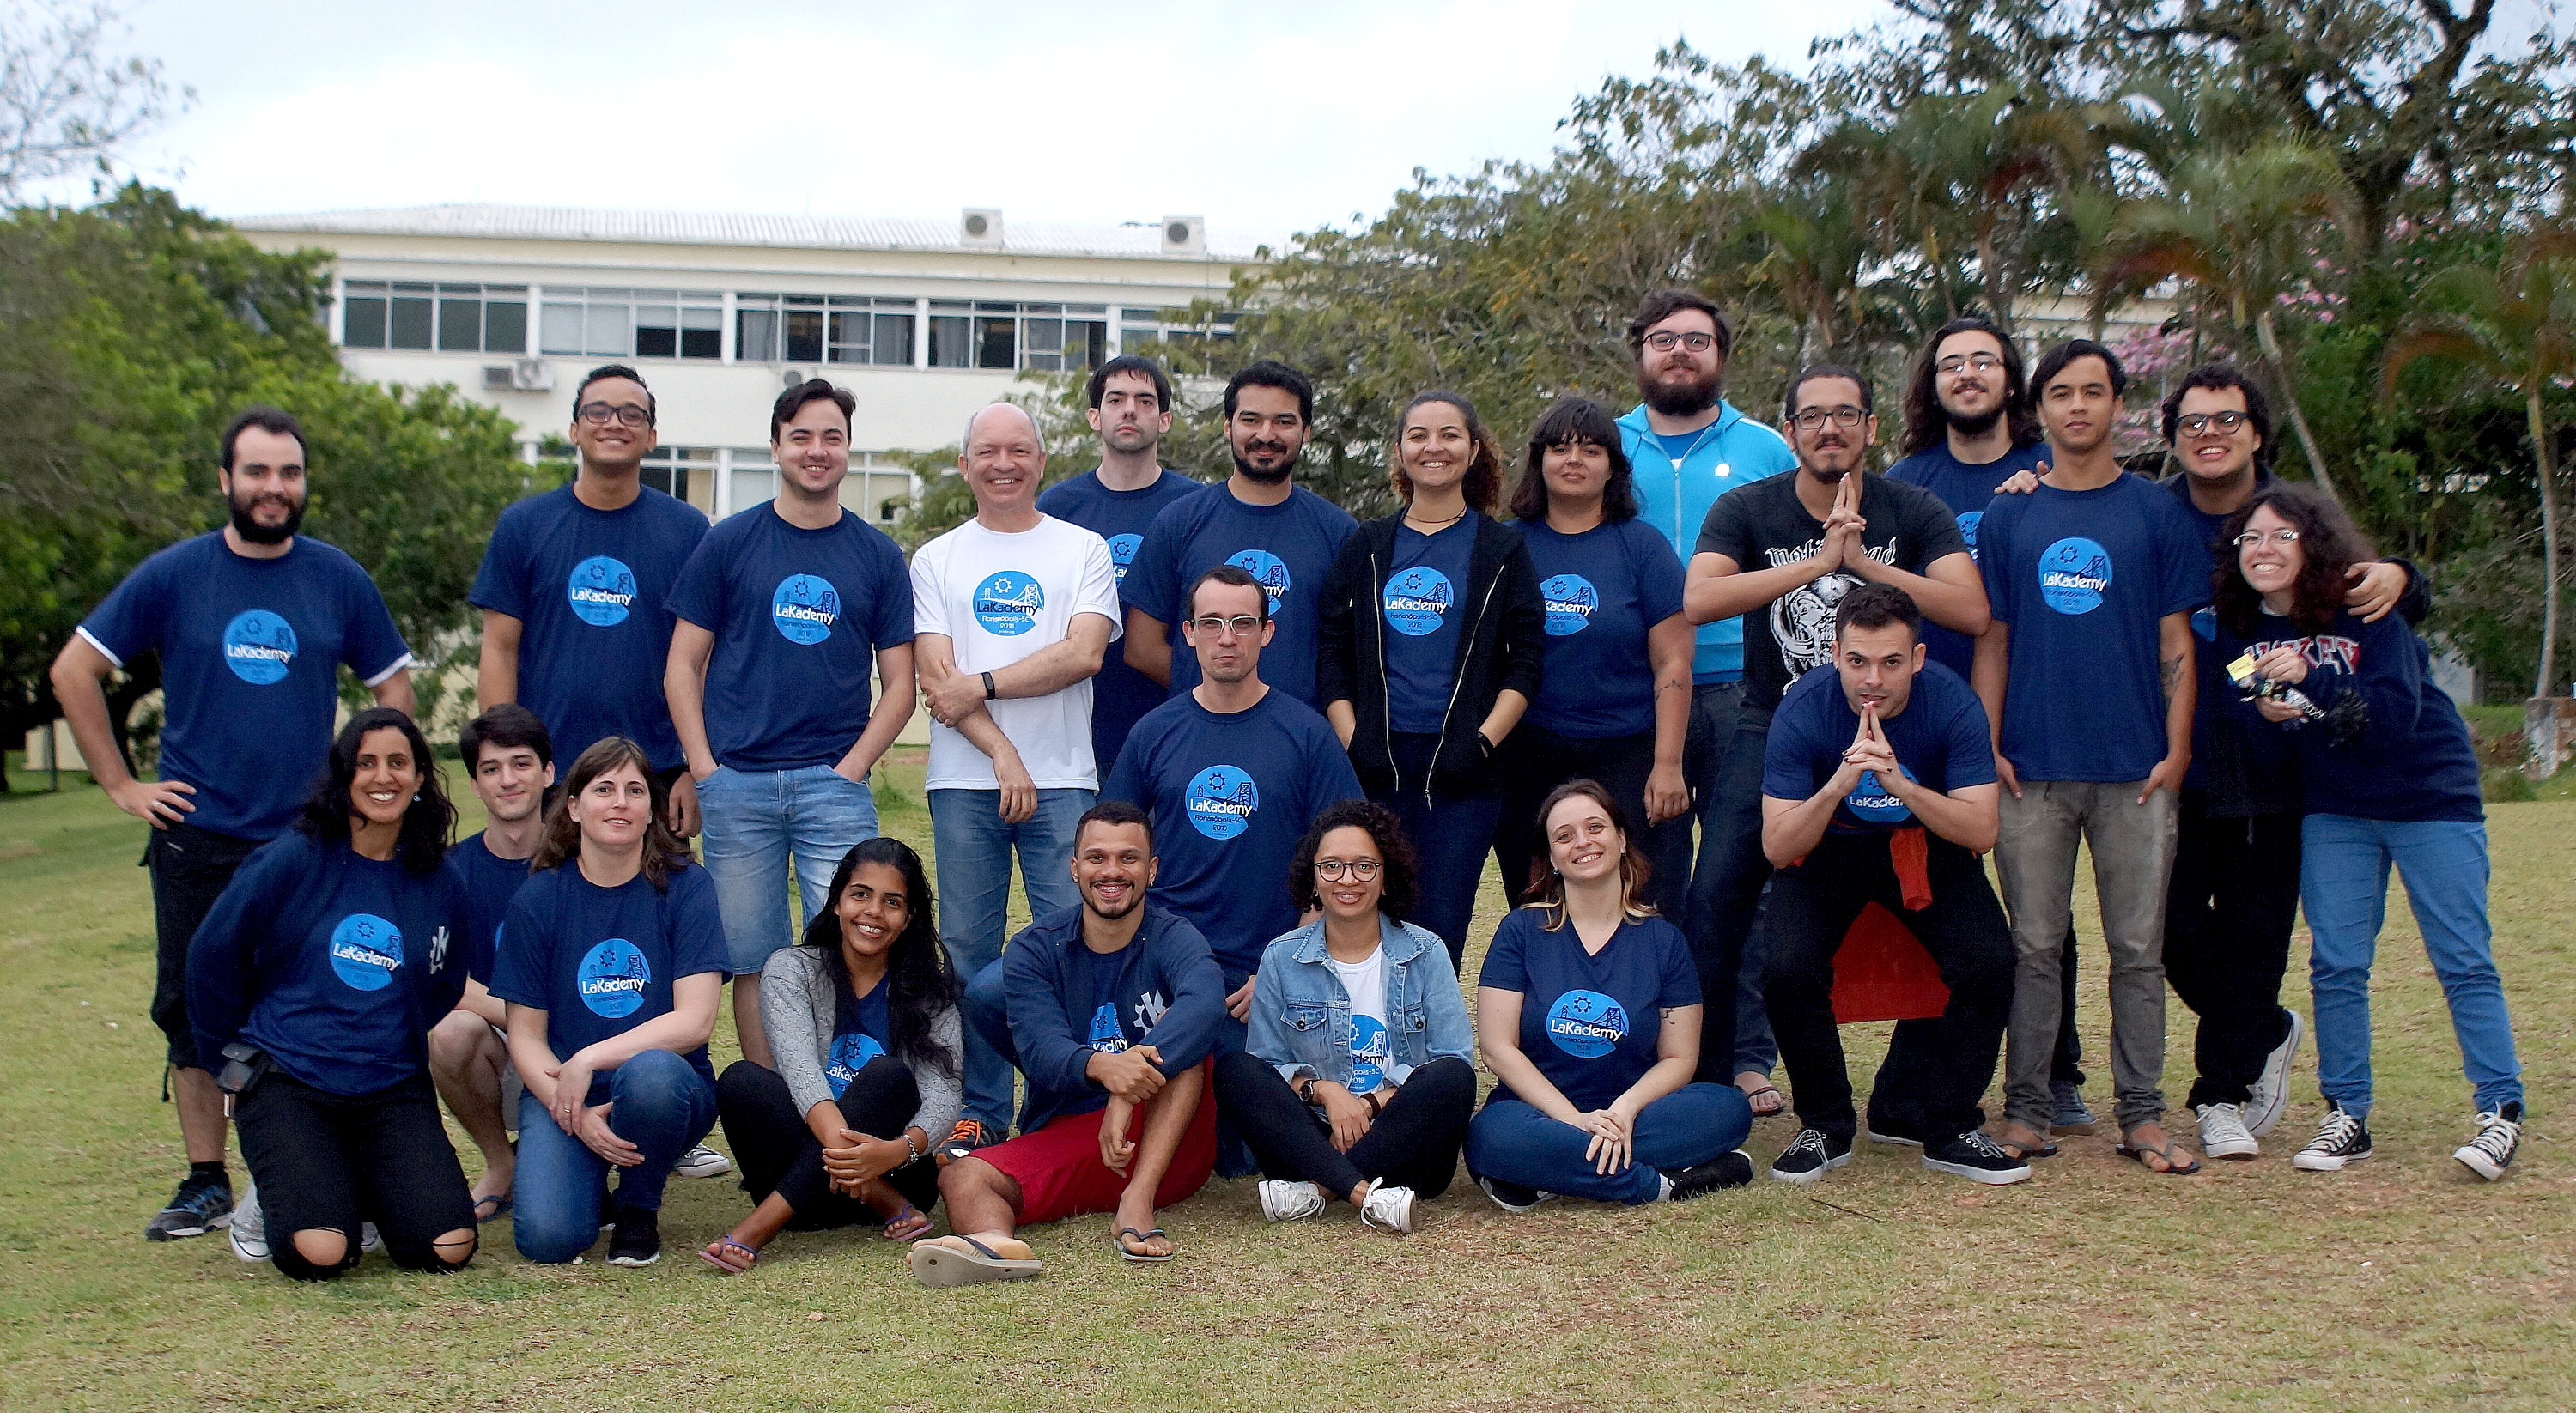 Participantes do LaKademy 2018 em Florianópolis